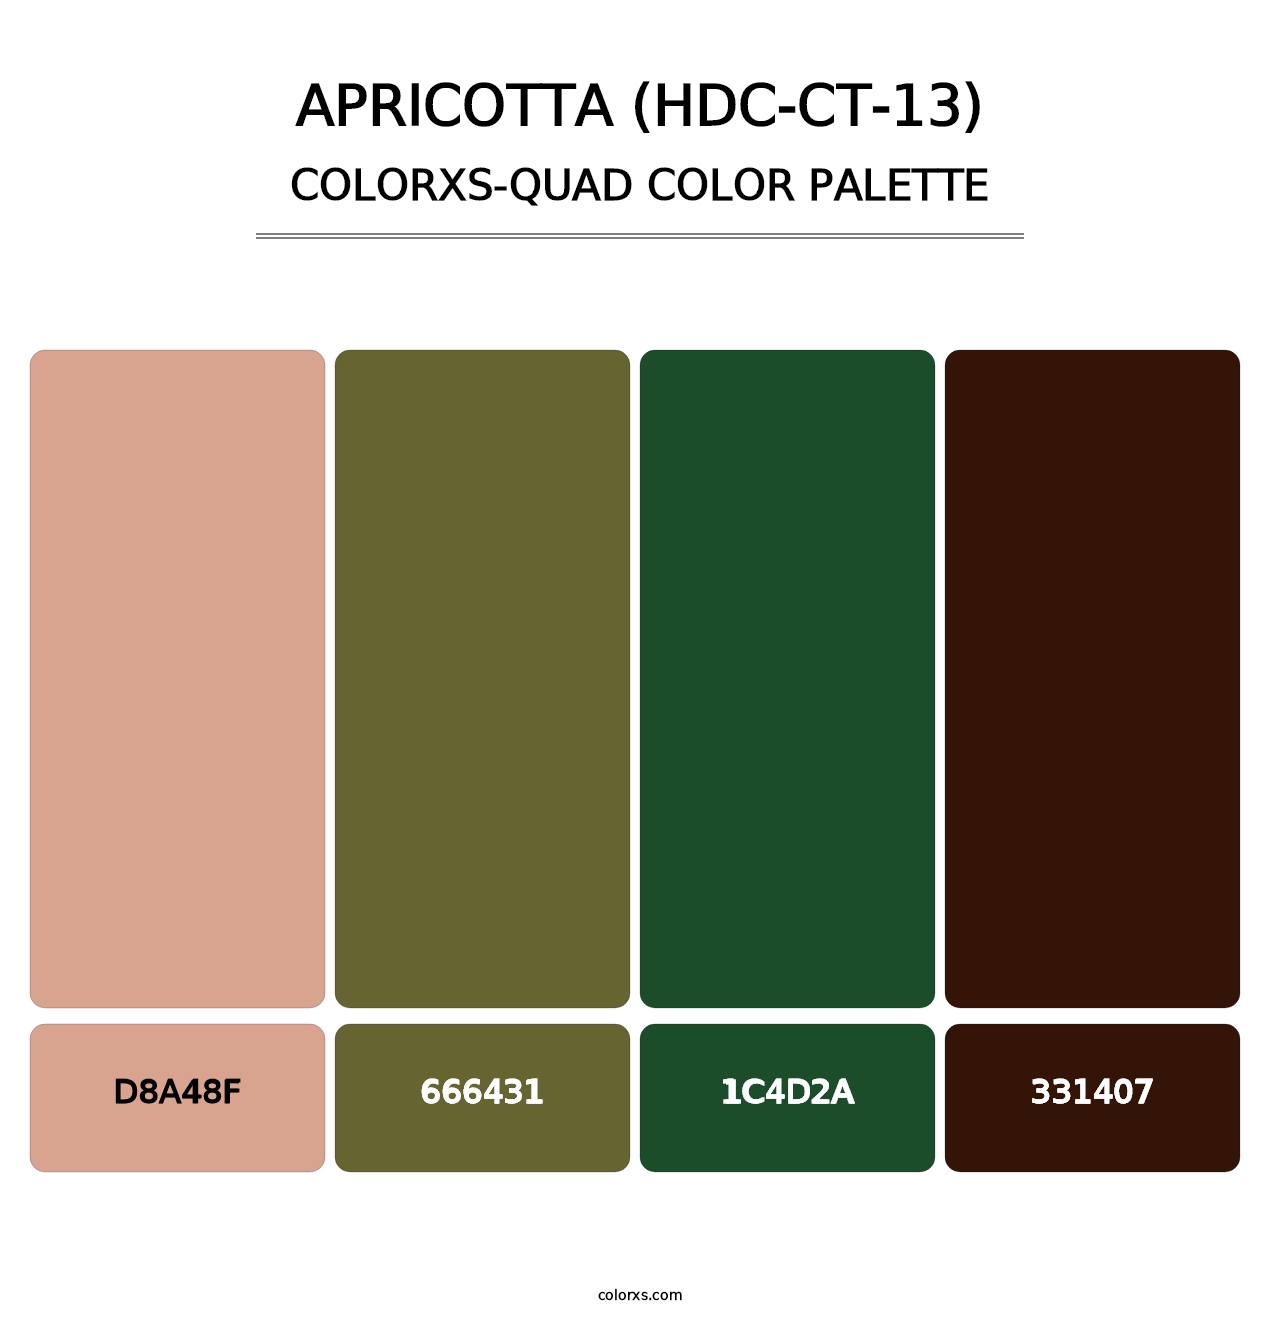 Apricotta (HDC-CT-13) - Colorxs Quad Palette